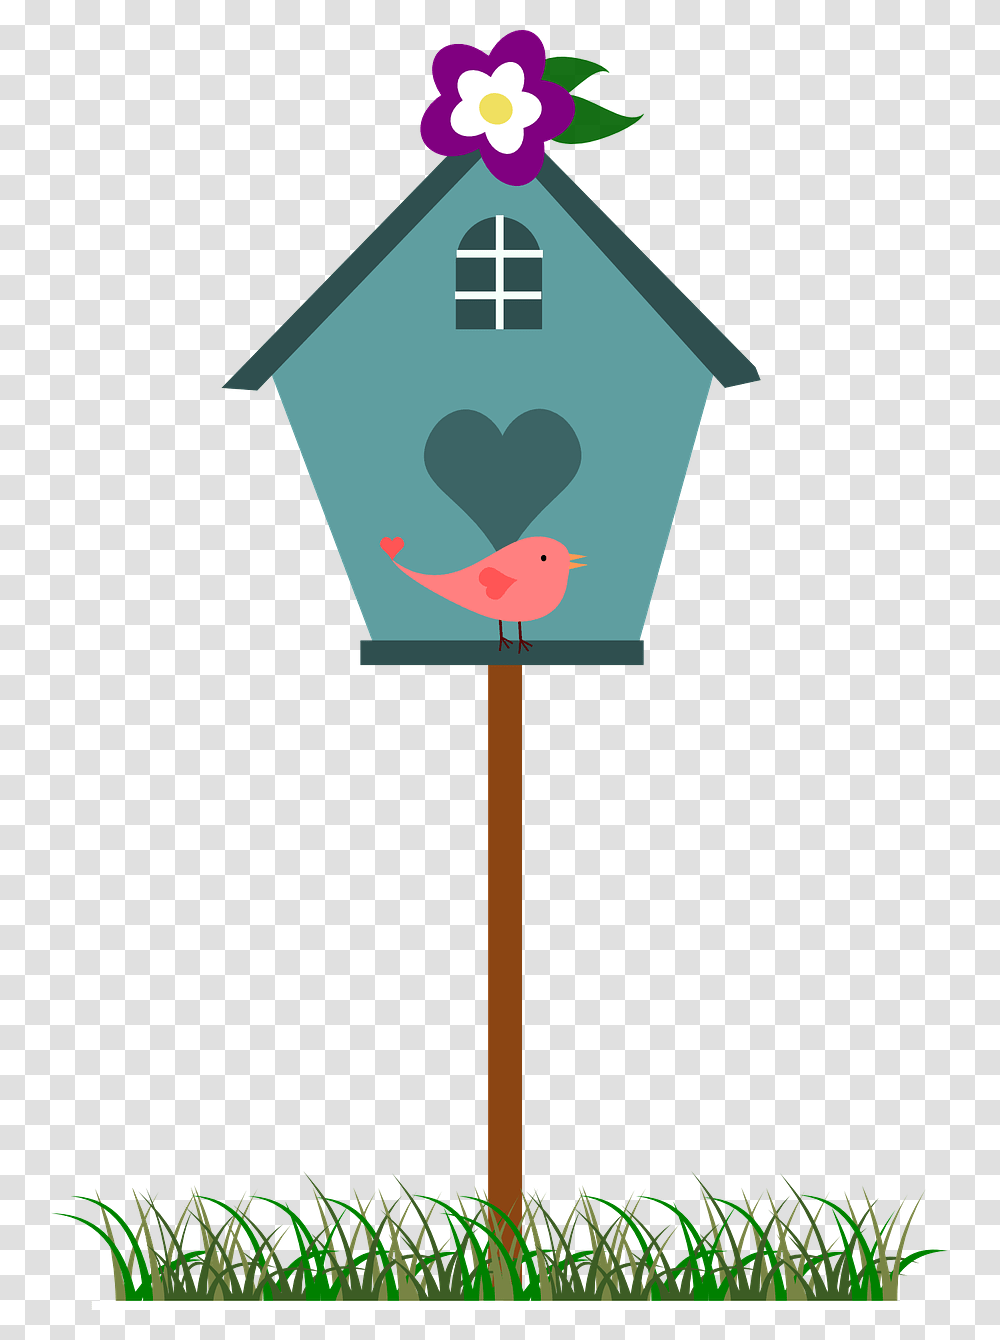 Cute Bird House Clip Art, Cross, Light, Flare Transparent Png